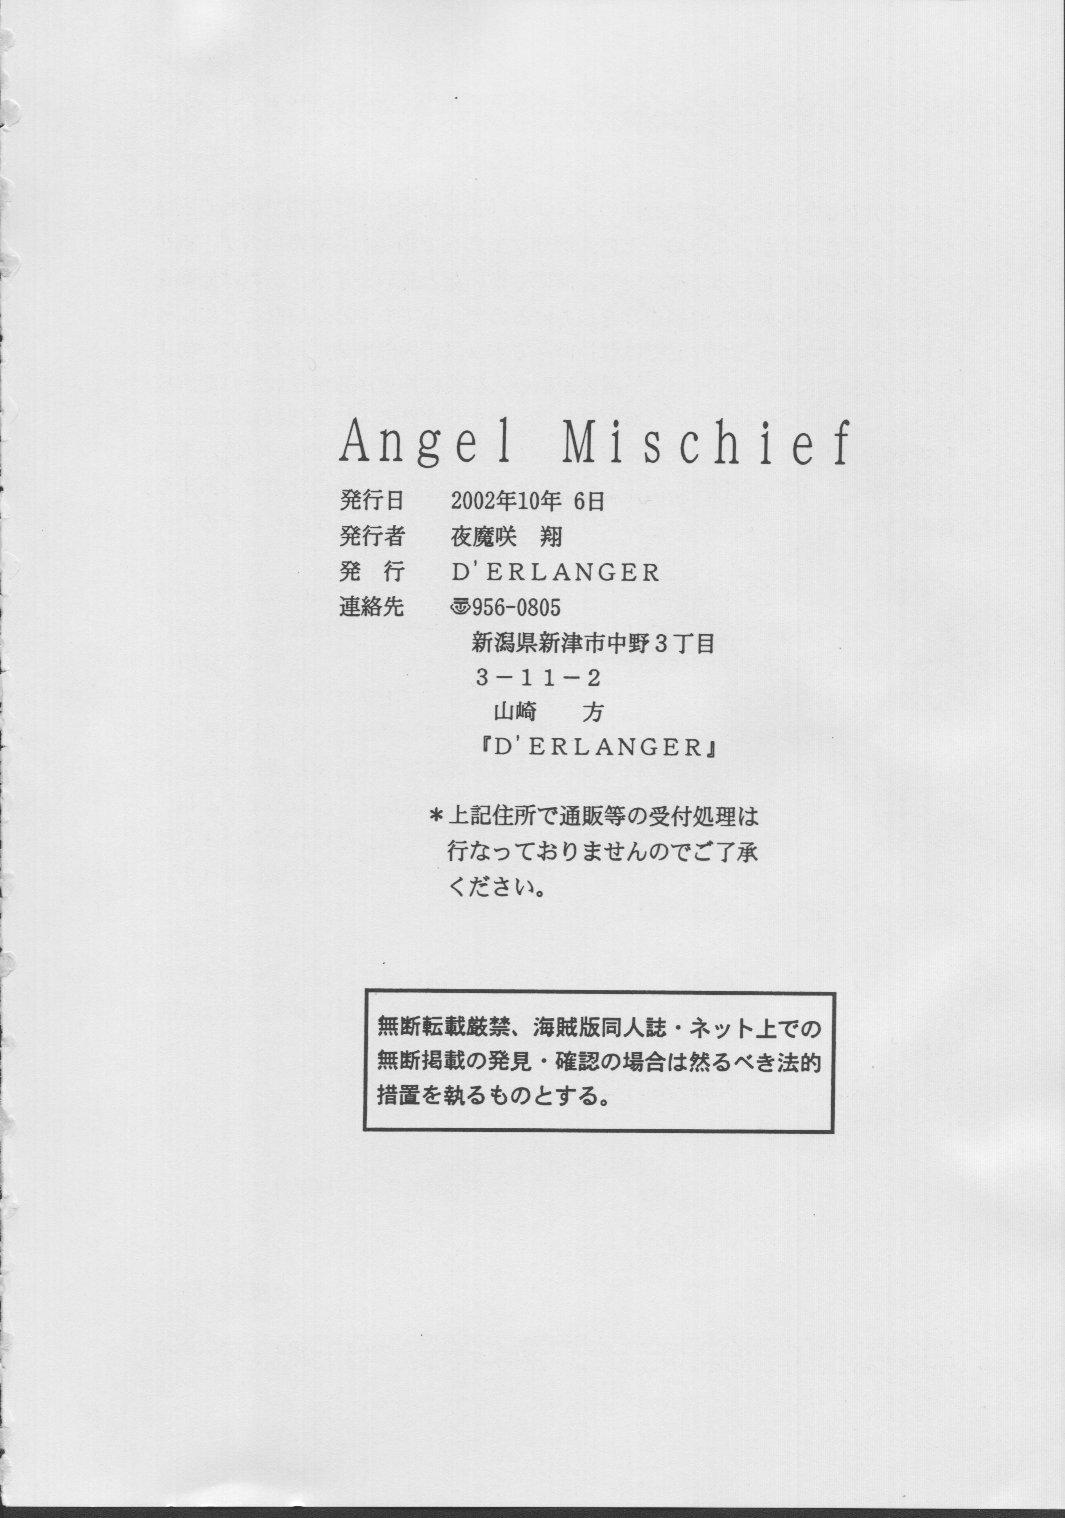 Angel Mischief 36